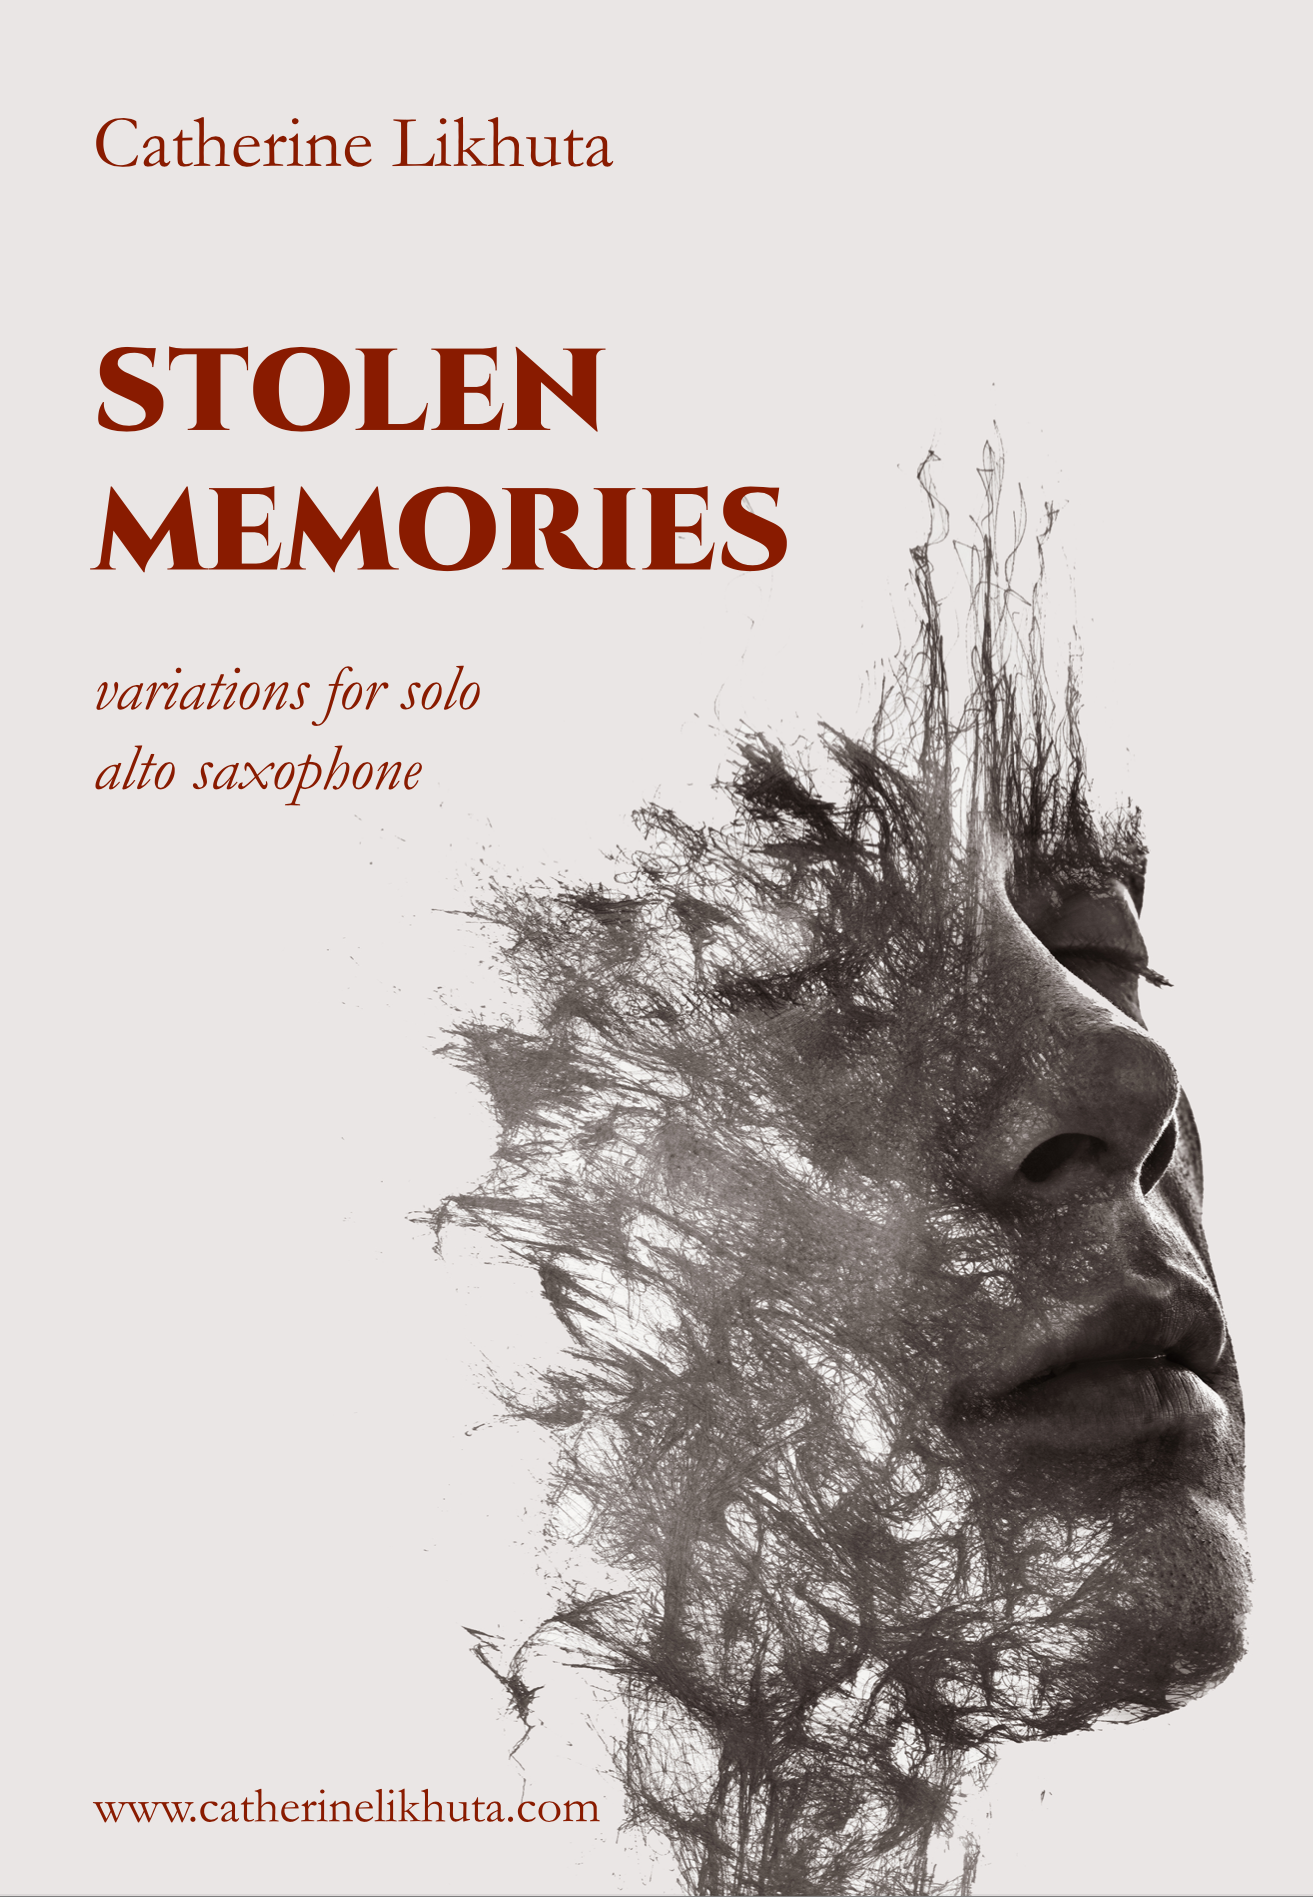 Stolen Memories by Catherine Likhuta